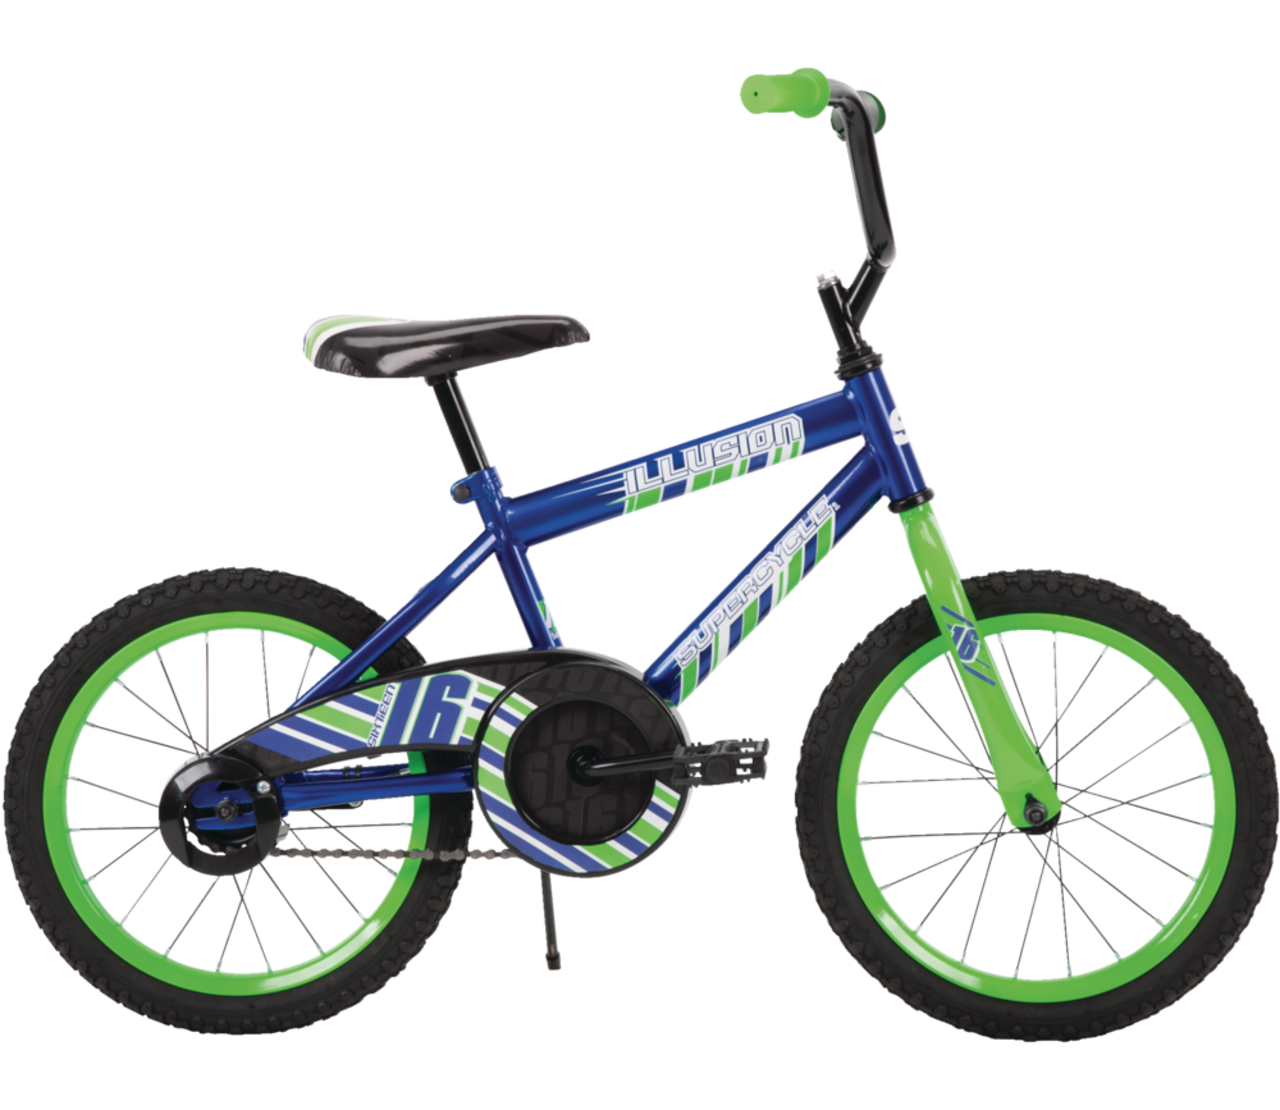 Vélo Supercycle Illusion pour enfants, 16 po, bleu/vert